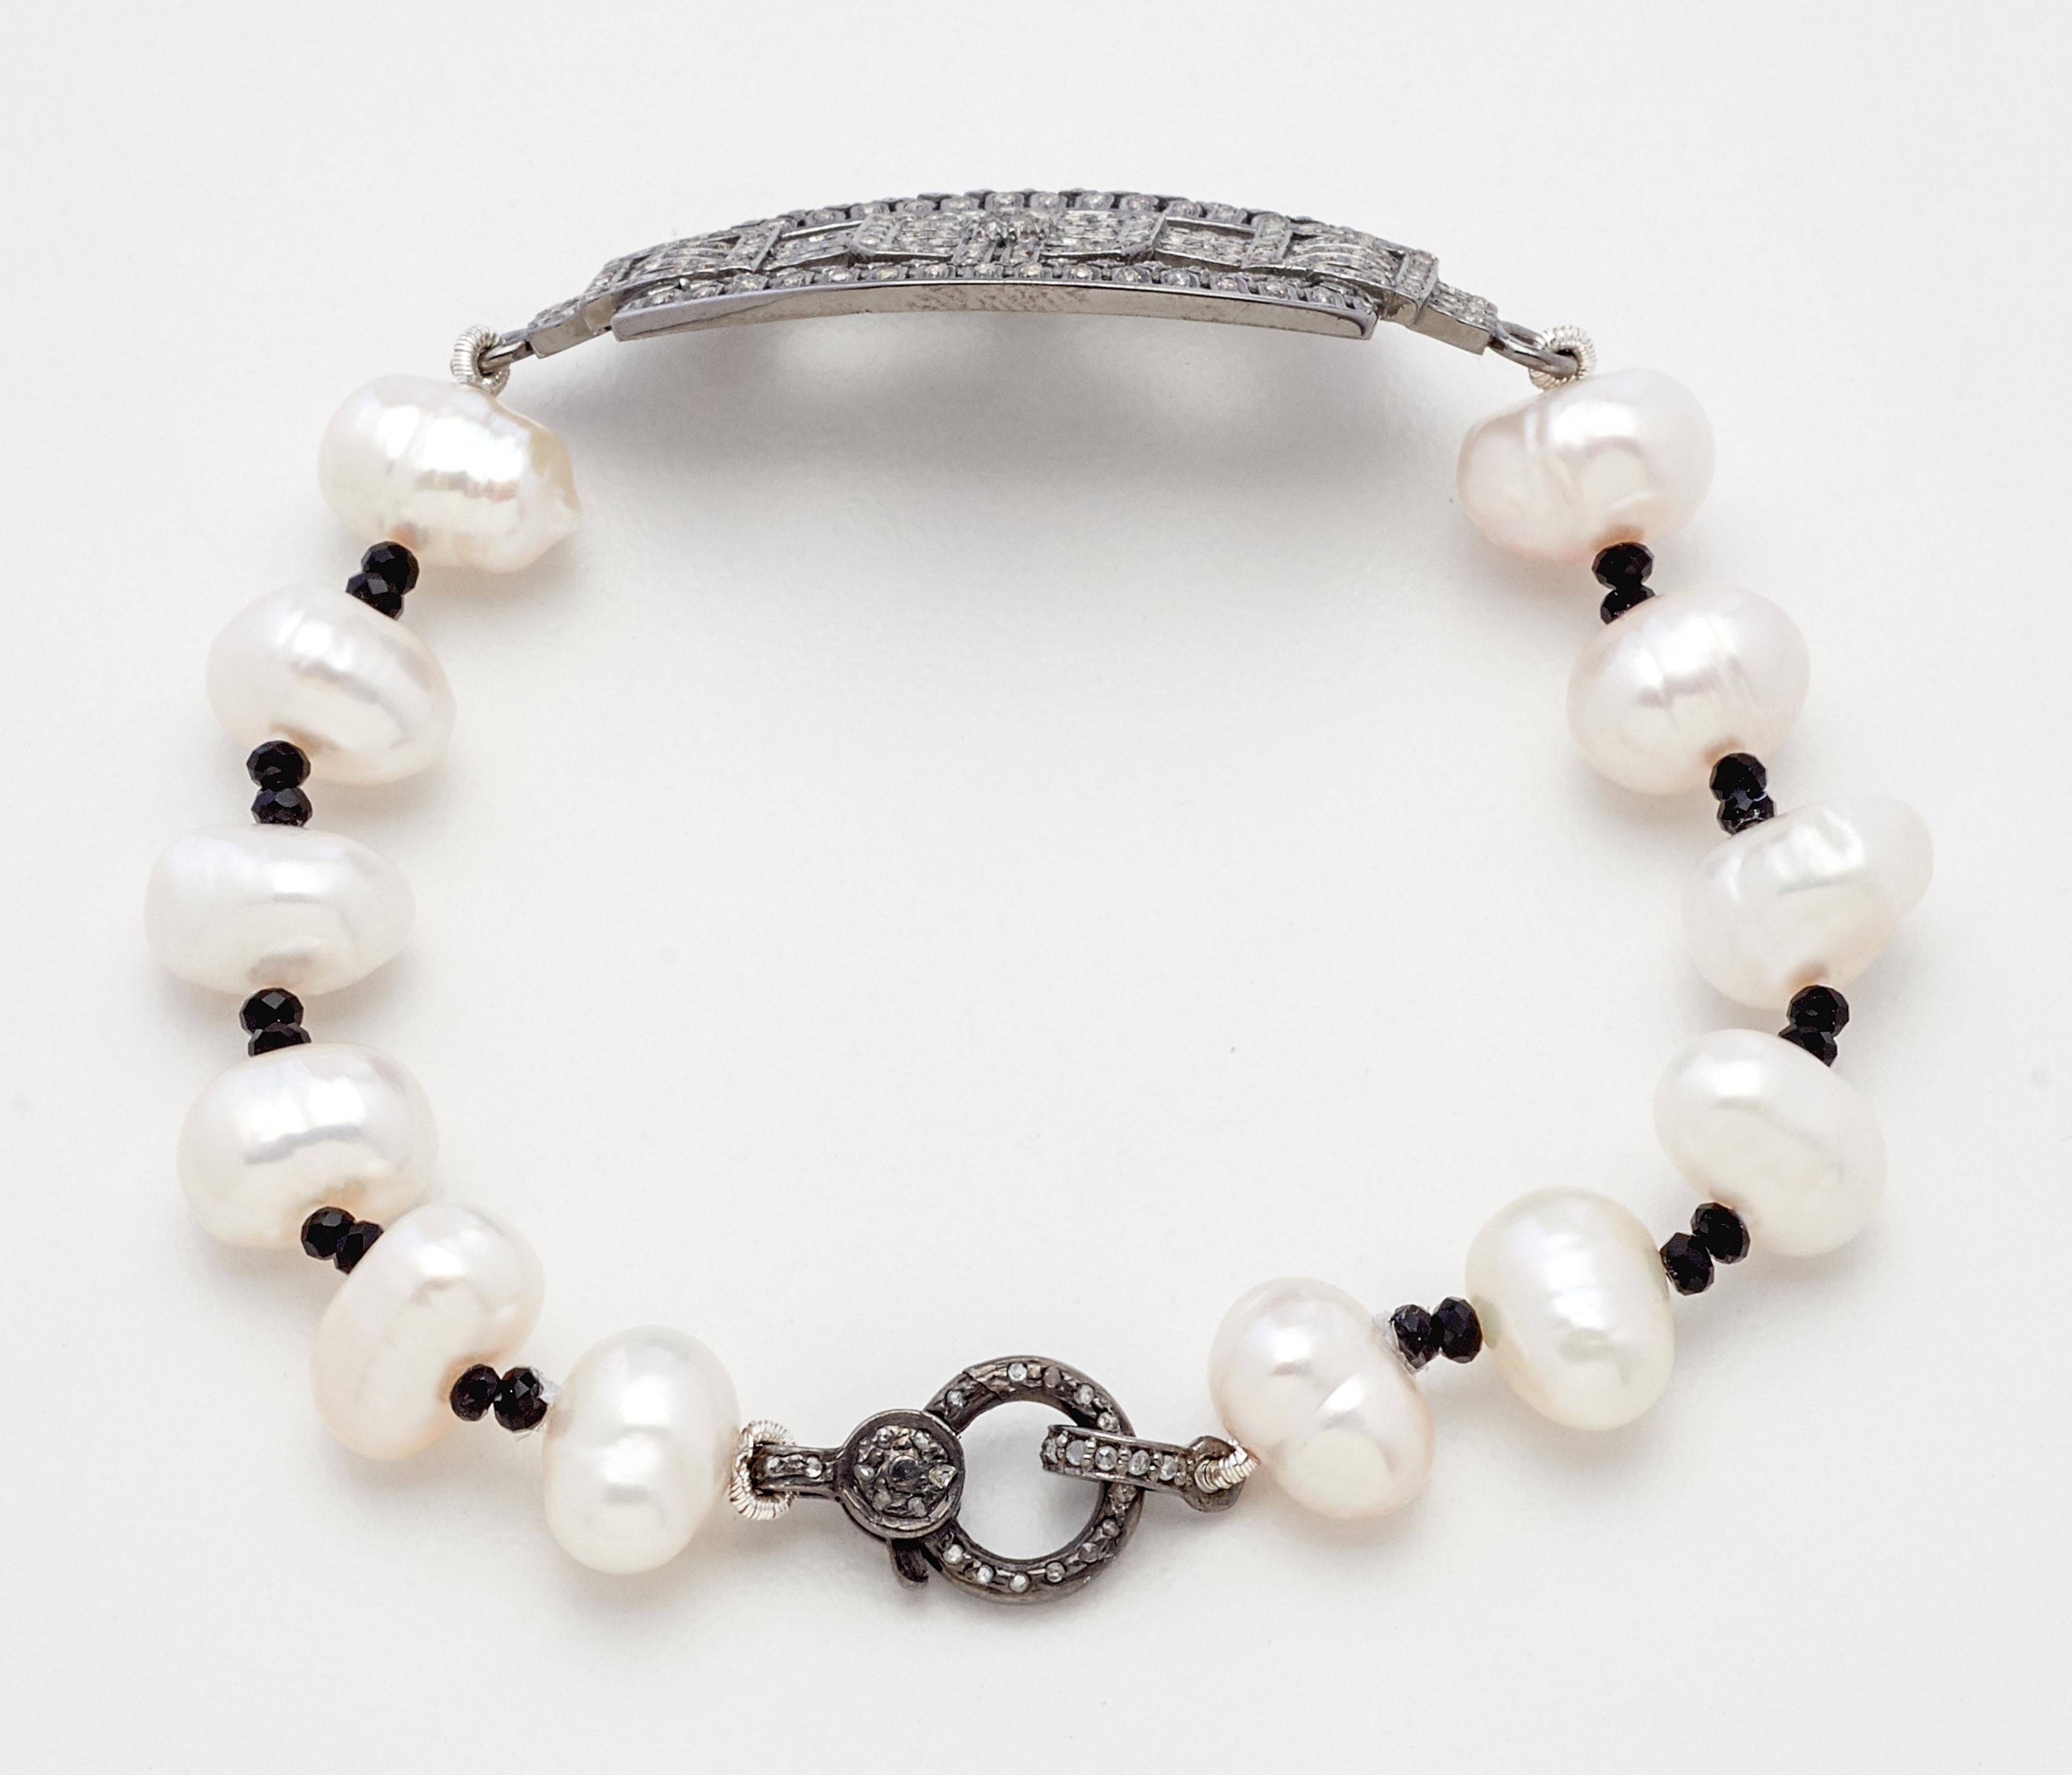 Créé de manière artisanale, ce magnifique bracelet à patte d'inspiration art déco en argent sterling recouvert de diamants, avec des perles naturelles Akoya et des perles en cristal de spinelle noir, orne magnifiquement le poignet. C'est un modèle